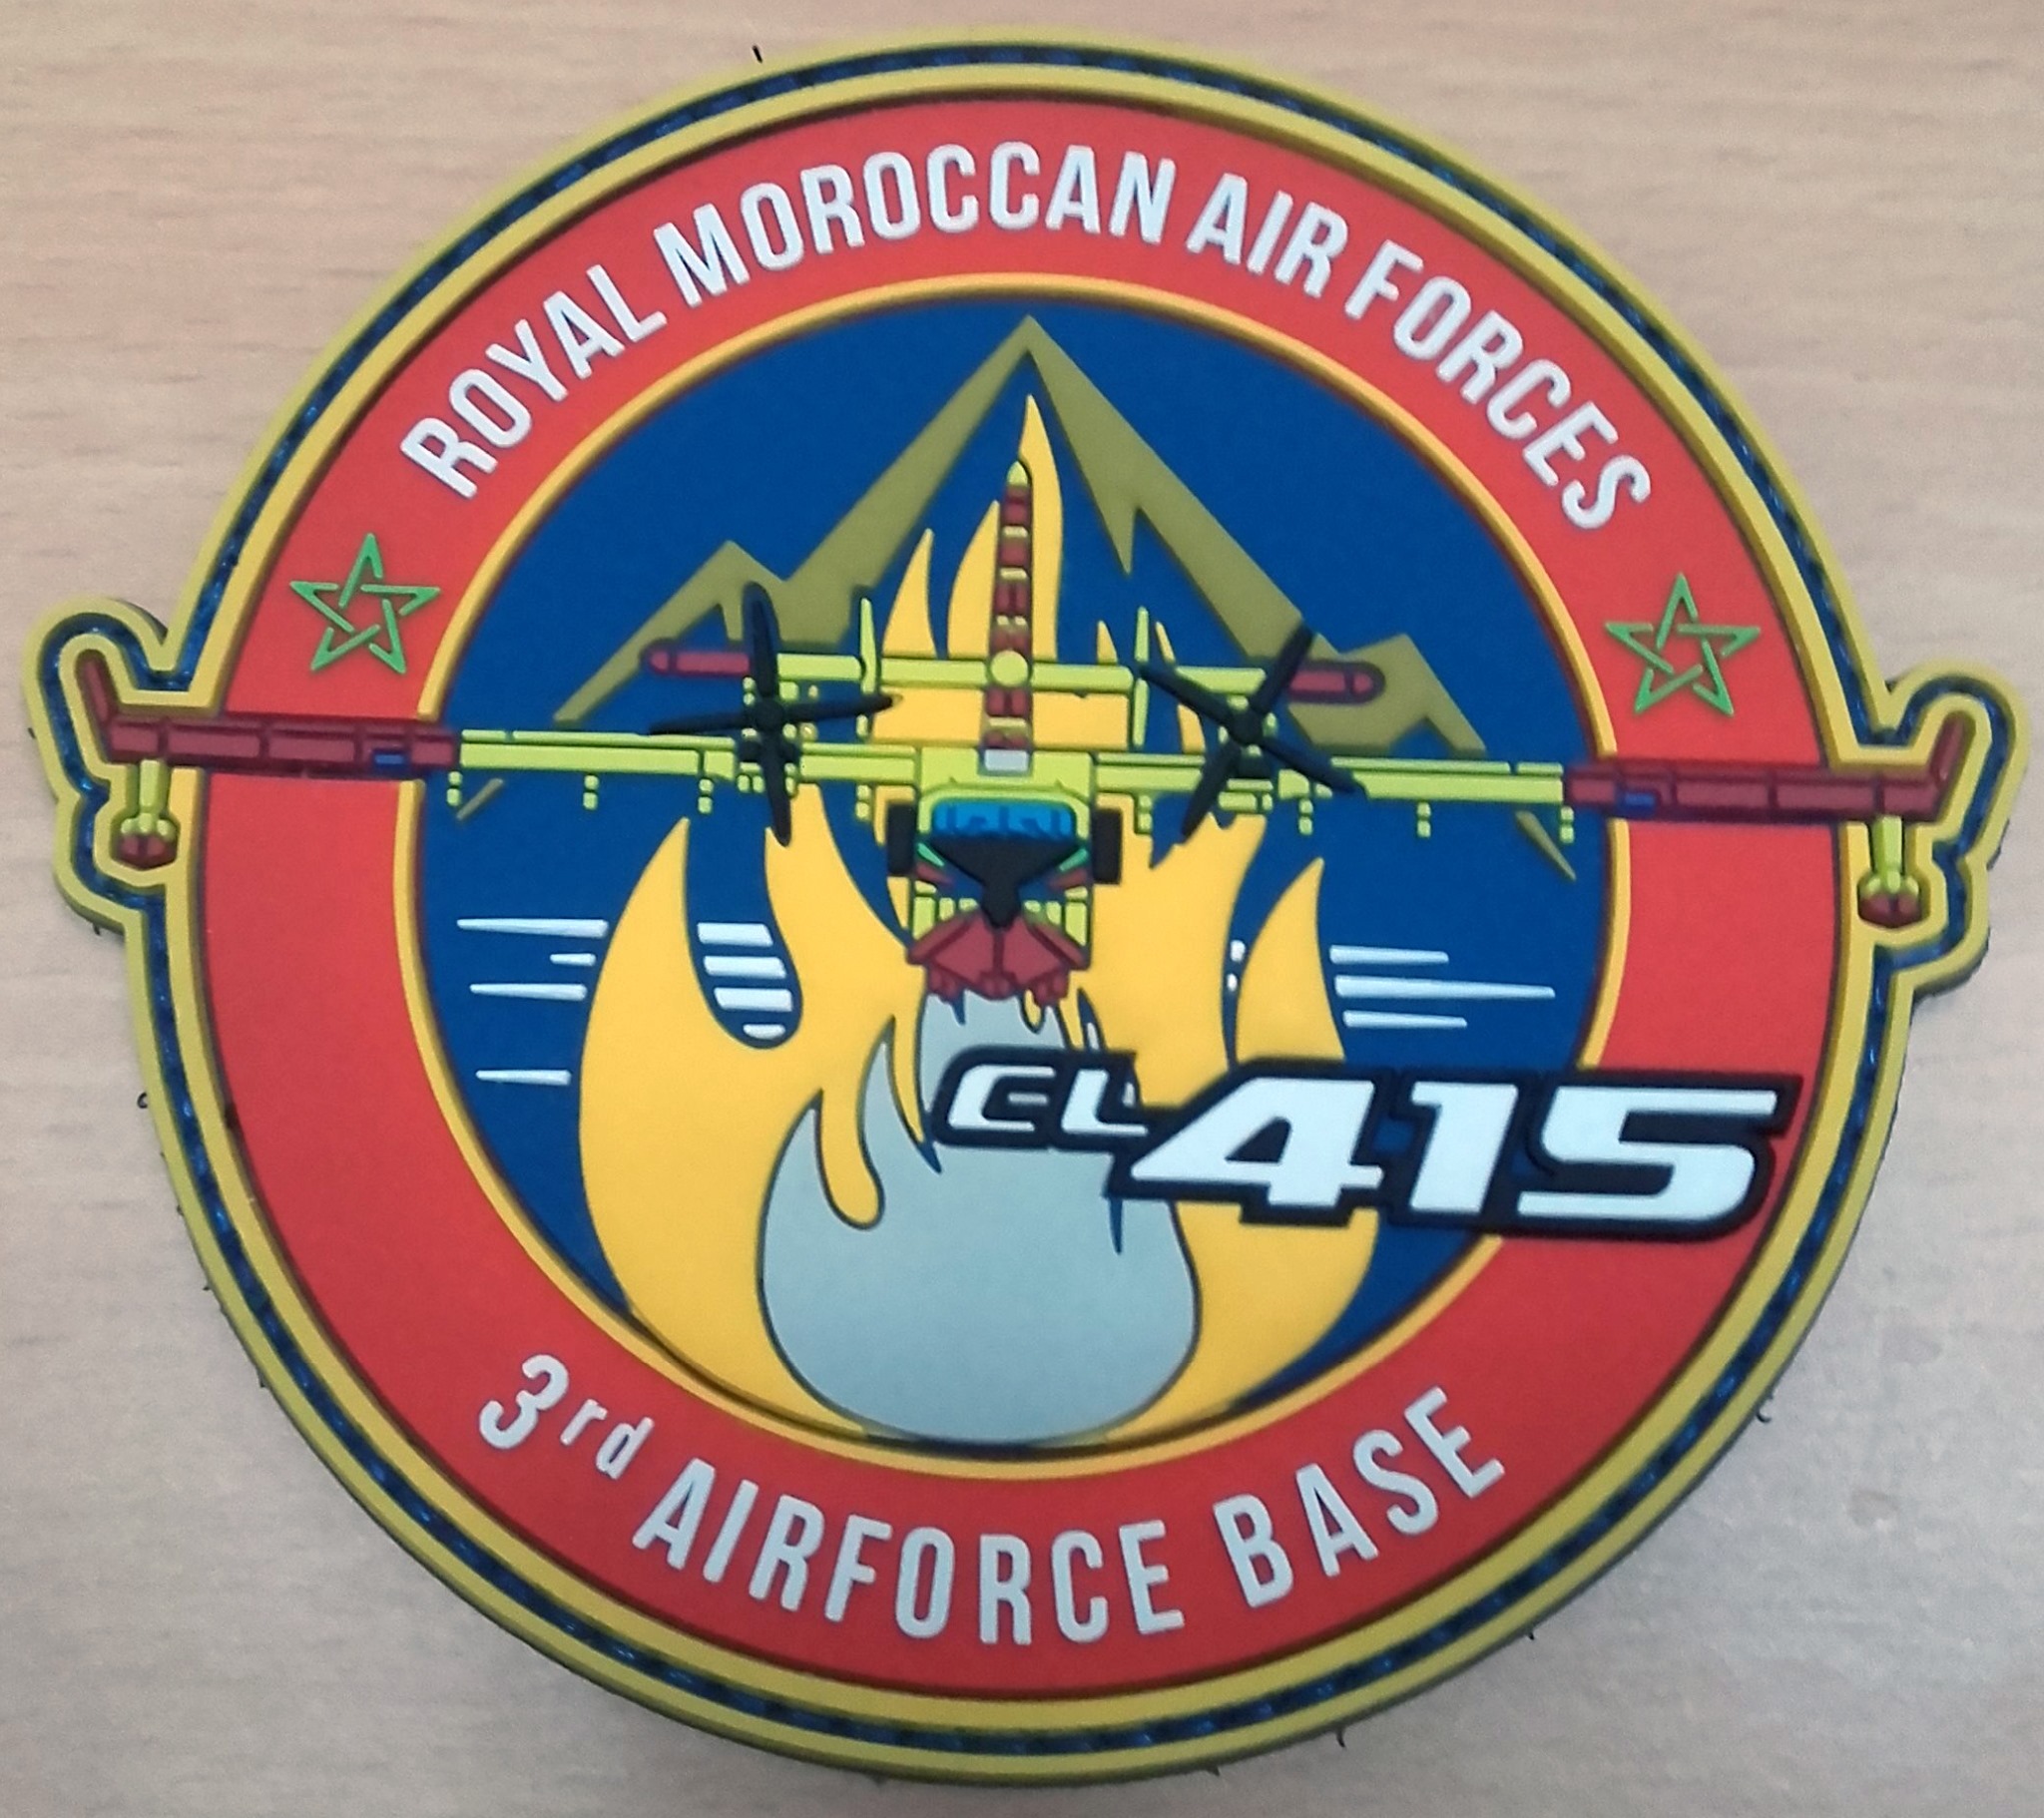 Peut être une image de texte qui dit ’MOROCCAN AIR FORCES ROYAL ☆ C4415 3rd AIRFORCE BASE’